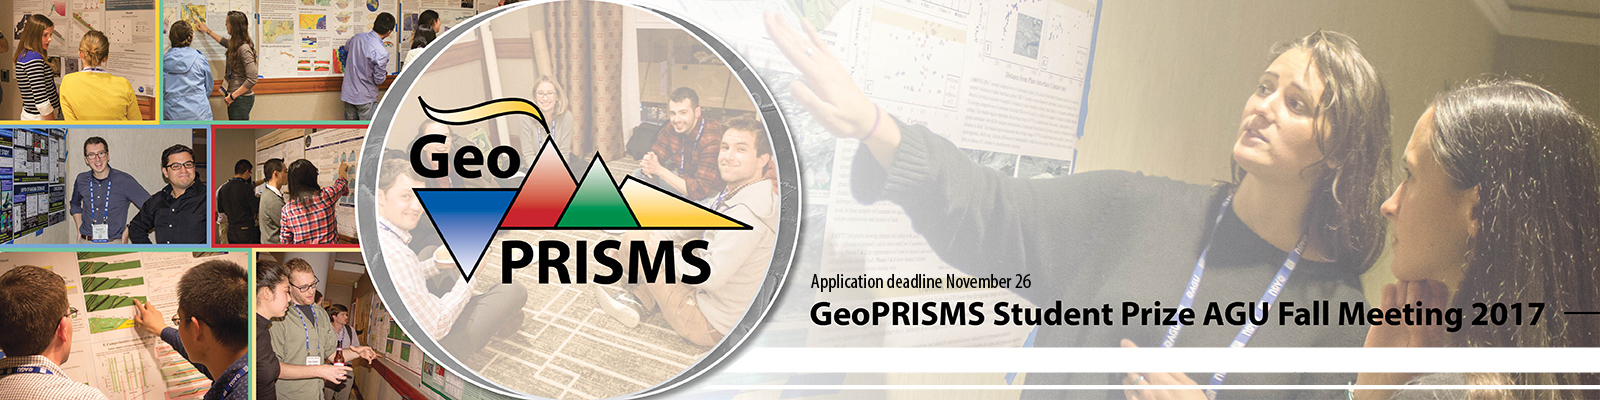 GeoPRISMS Student Prize